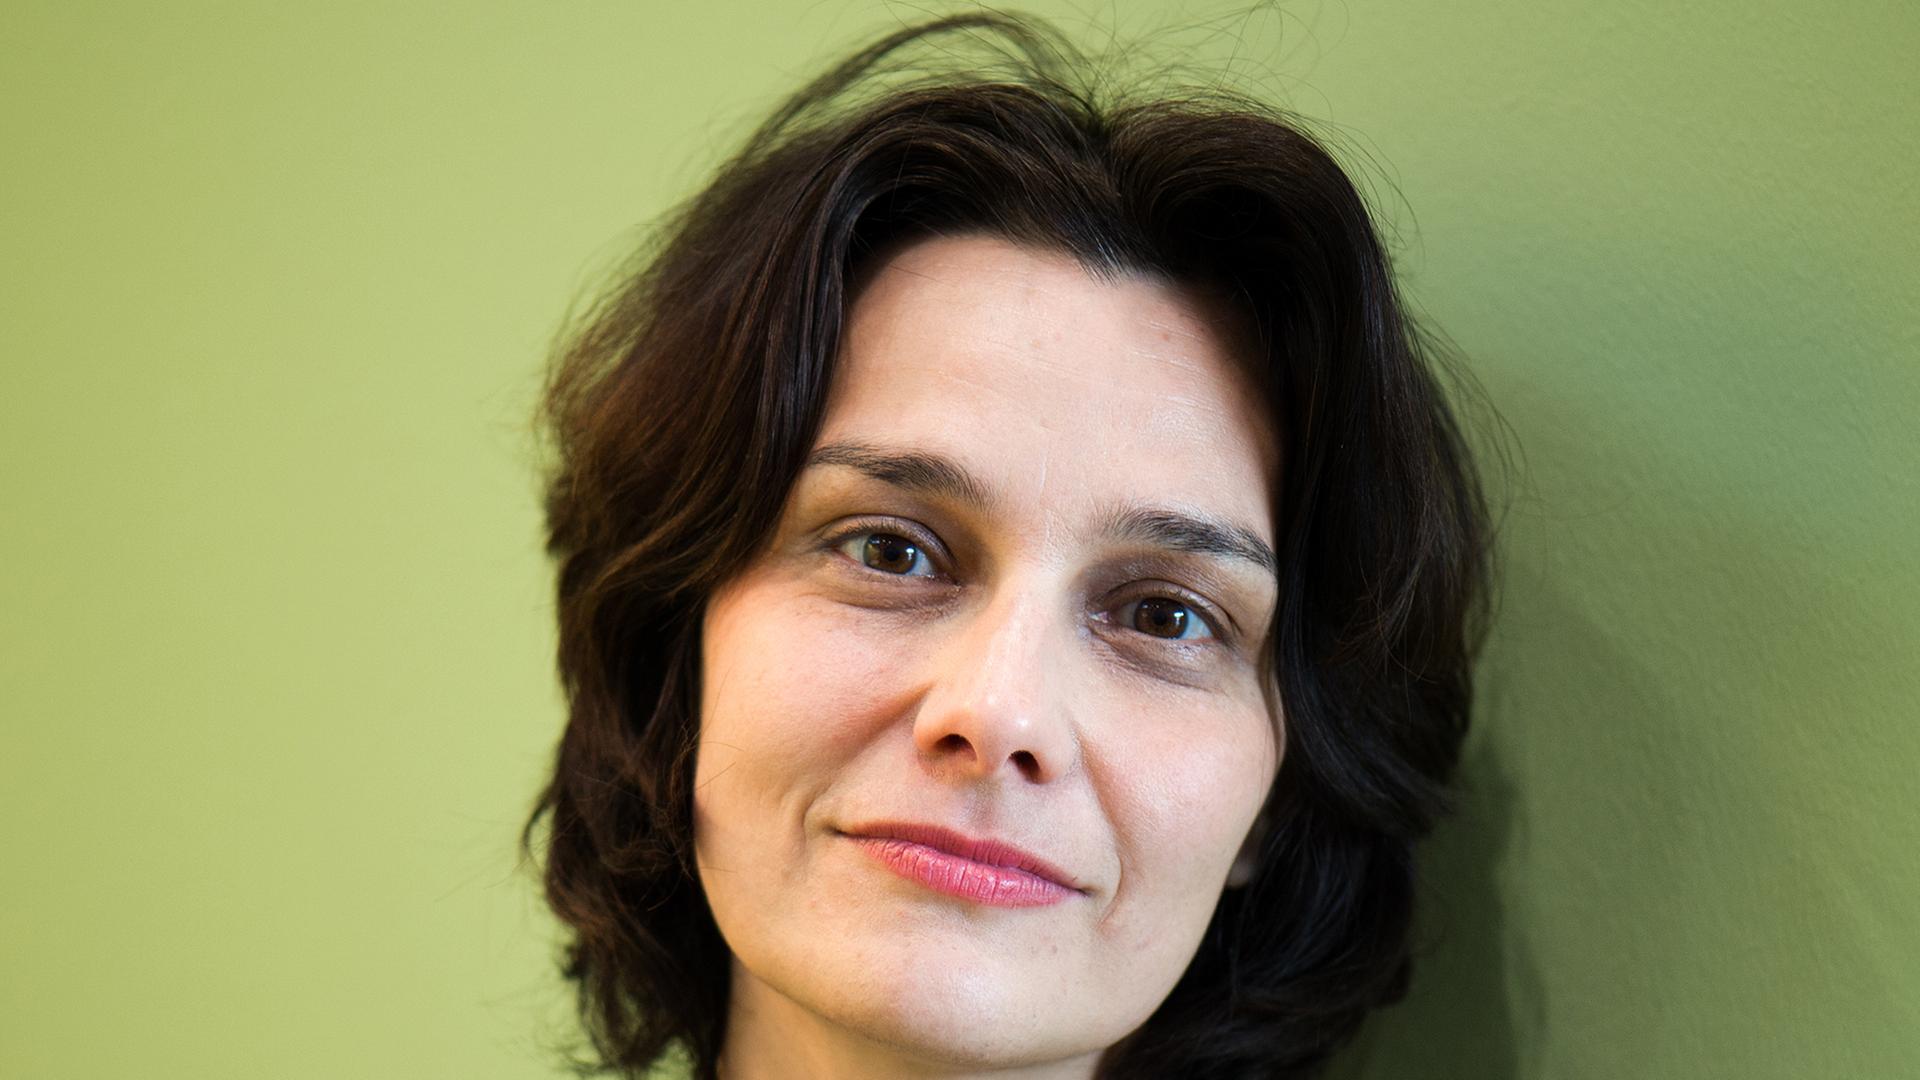 Die Schriftstellerin Katja Petrowskaja, aufgenommen am 13.03.2014 auf der Leipziger Buchmesse in Leipzig (Sachsen).